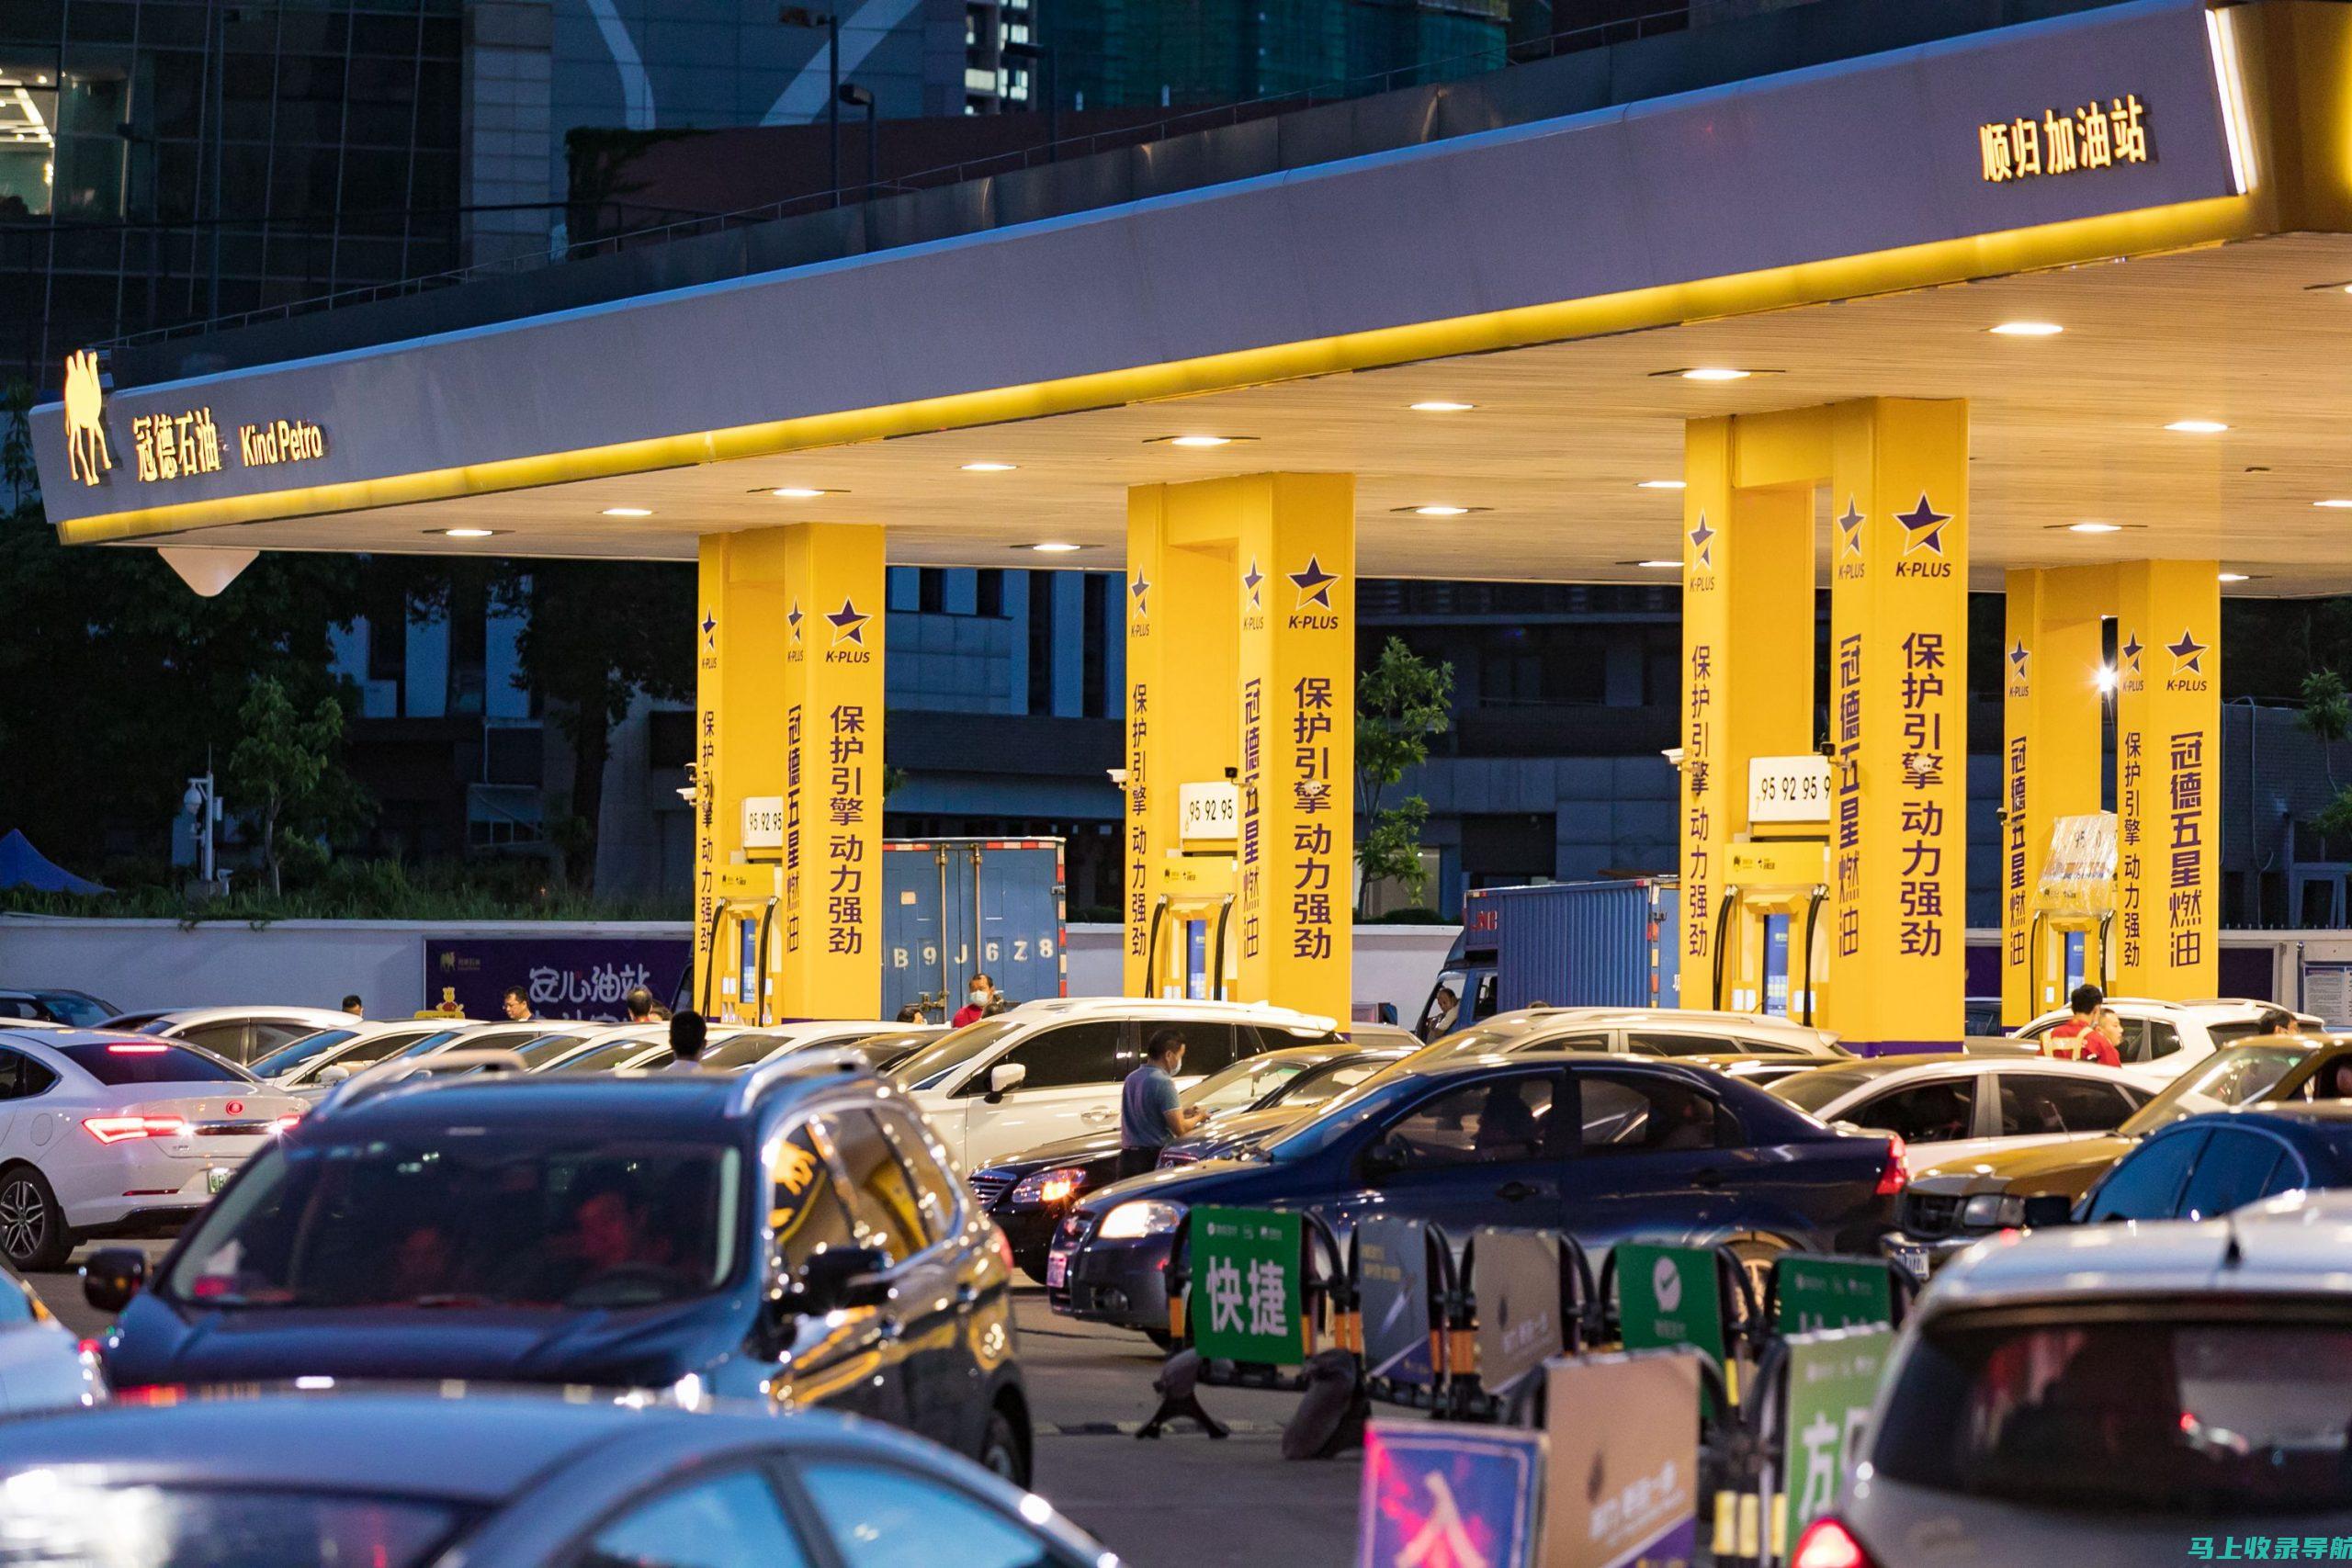 处理加油站客户投诉和建议，维护加油站形象。